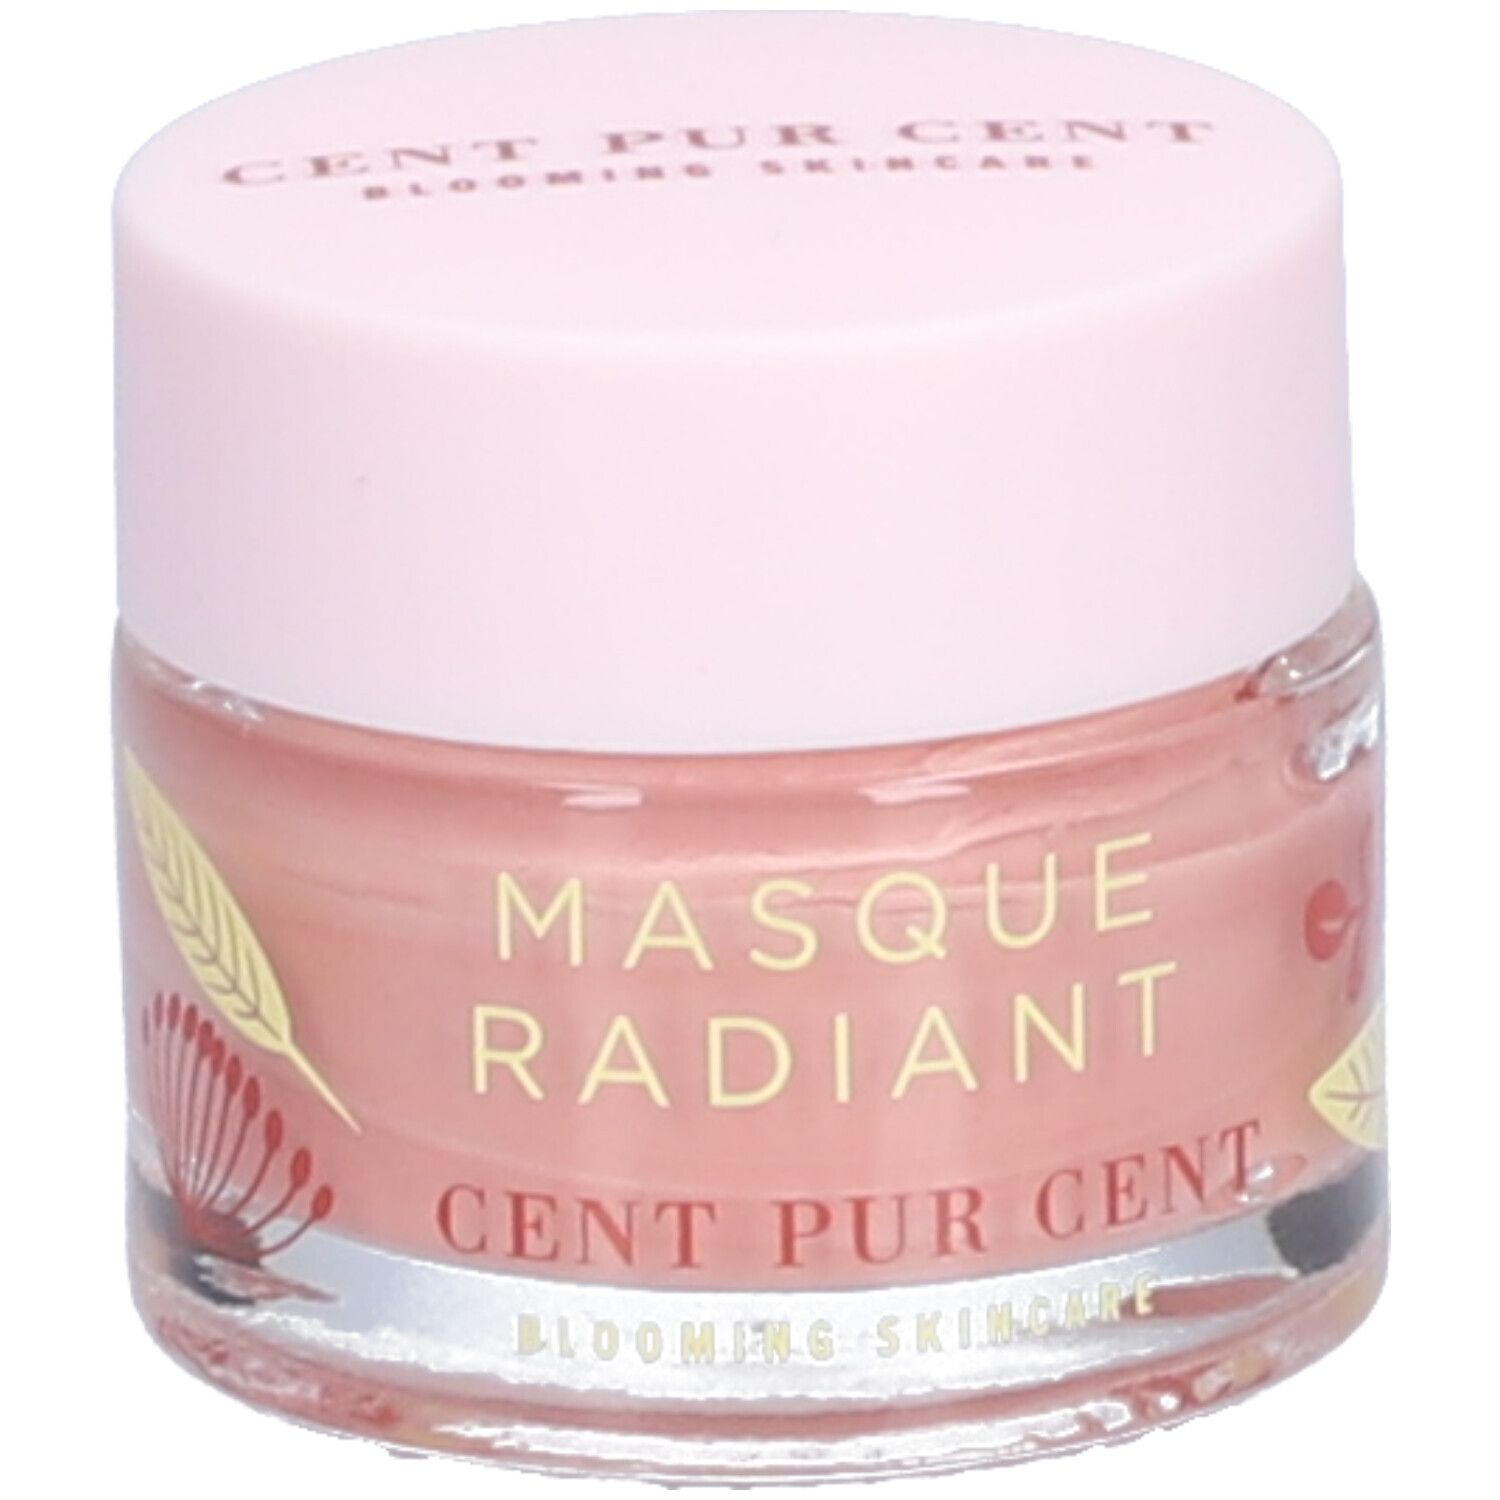 Cent PUR Cent Mini Masque Radiant - Masque d'argile rose